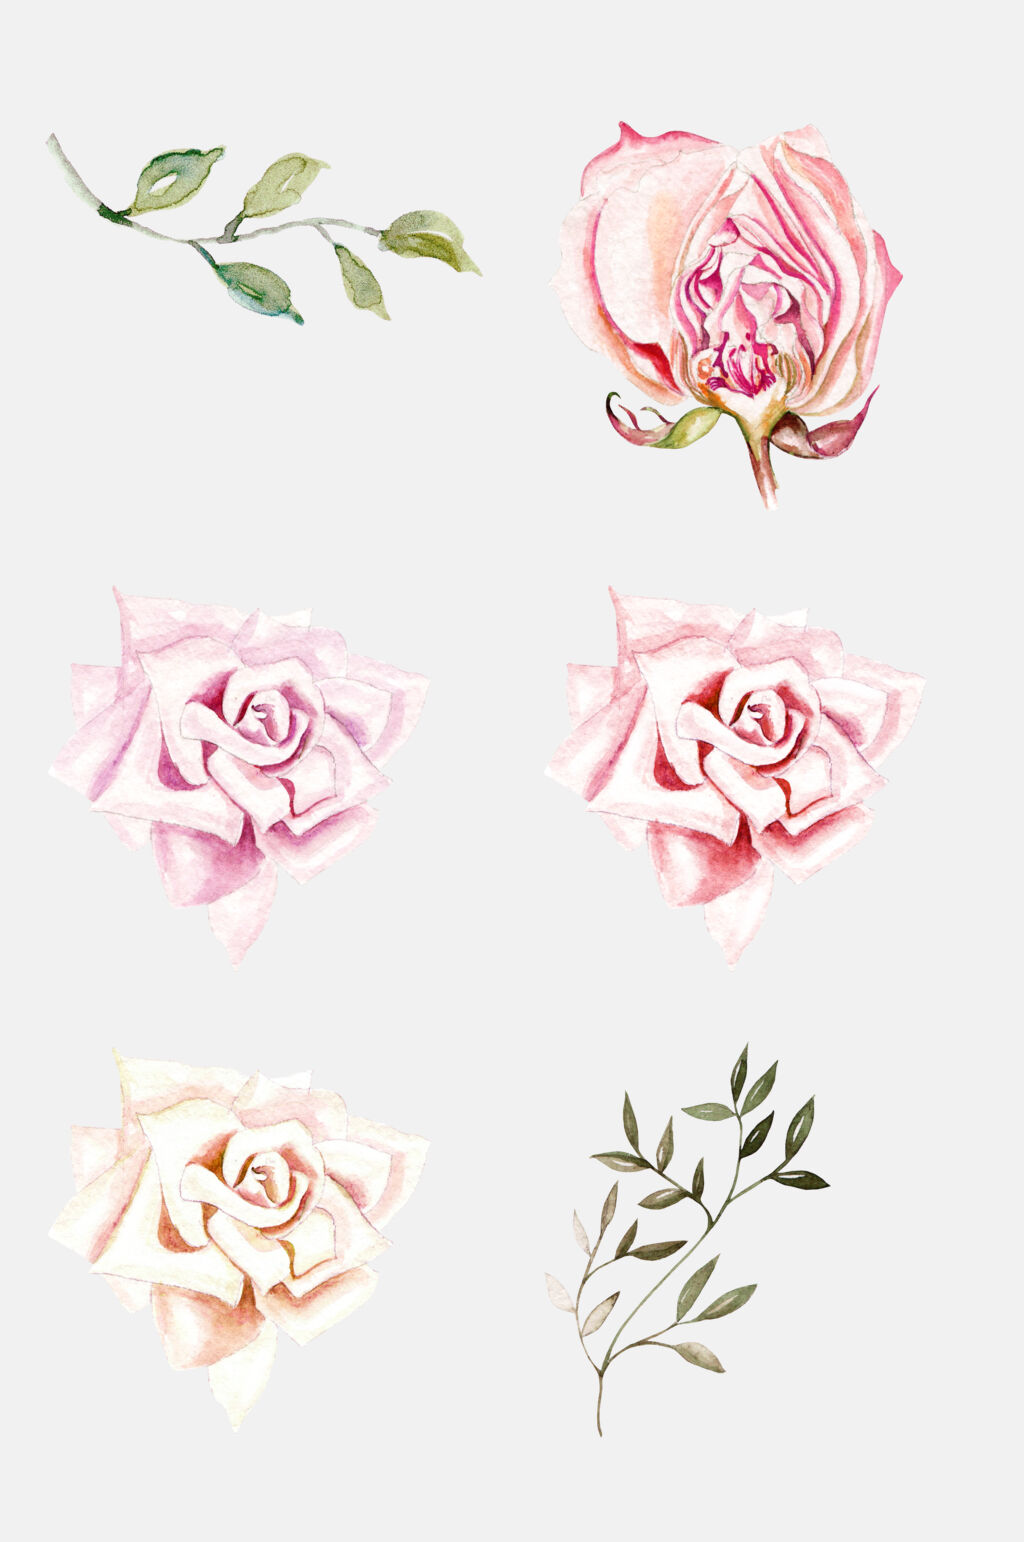 玫瑰彩铅手绘插画免抠png元素素材